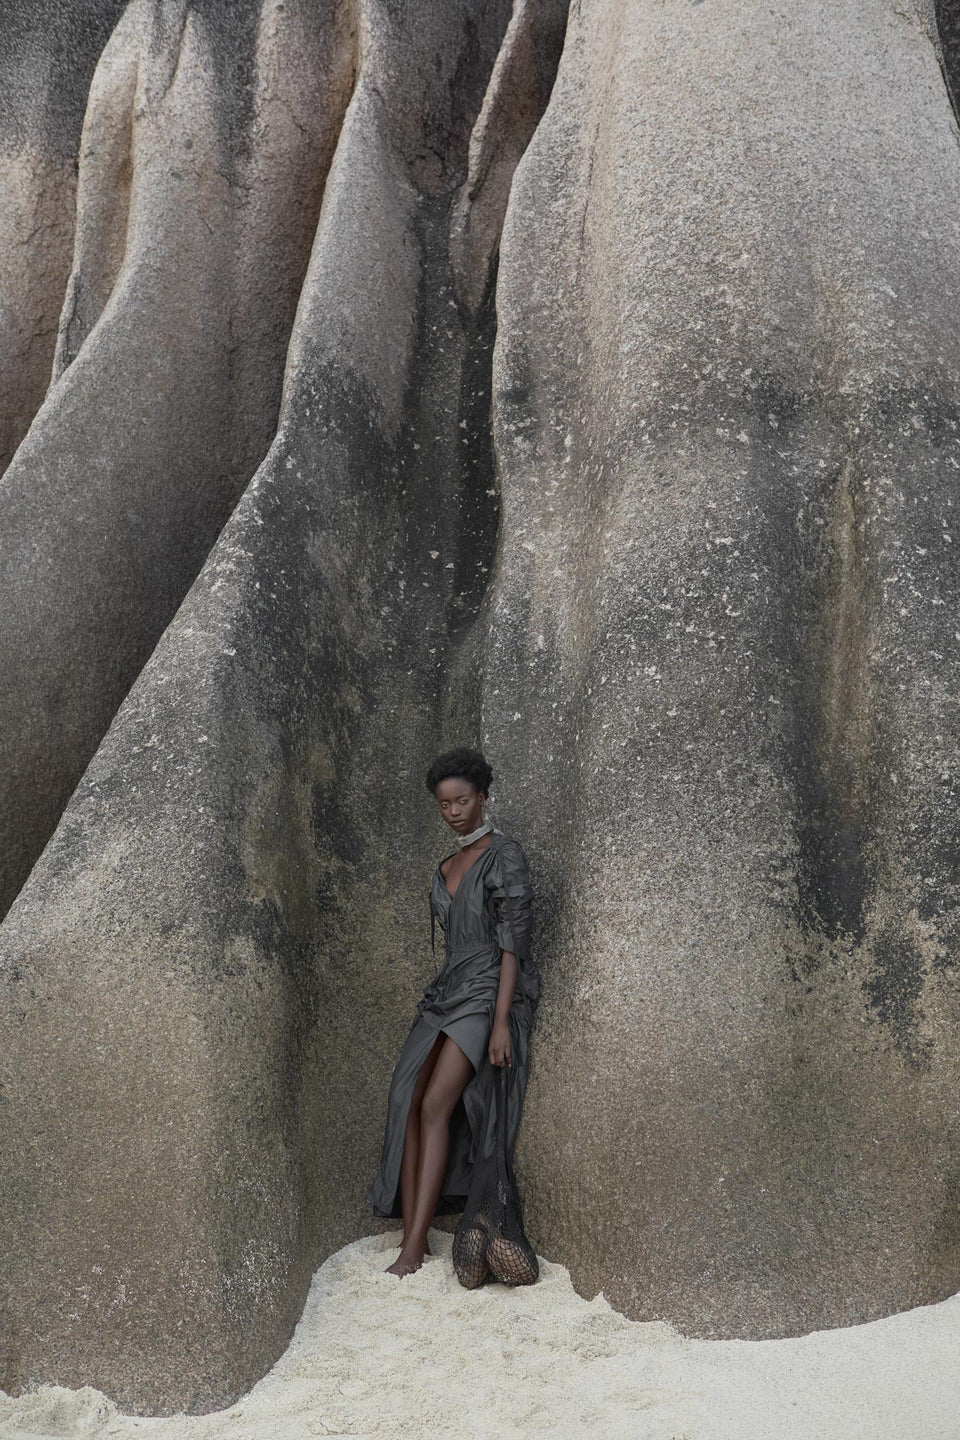 CARL KAPP SS2020 collection in Seychelles Six Senses Zil Pasyon | Praslin dress